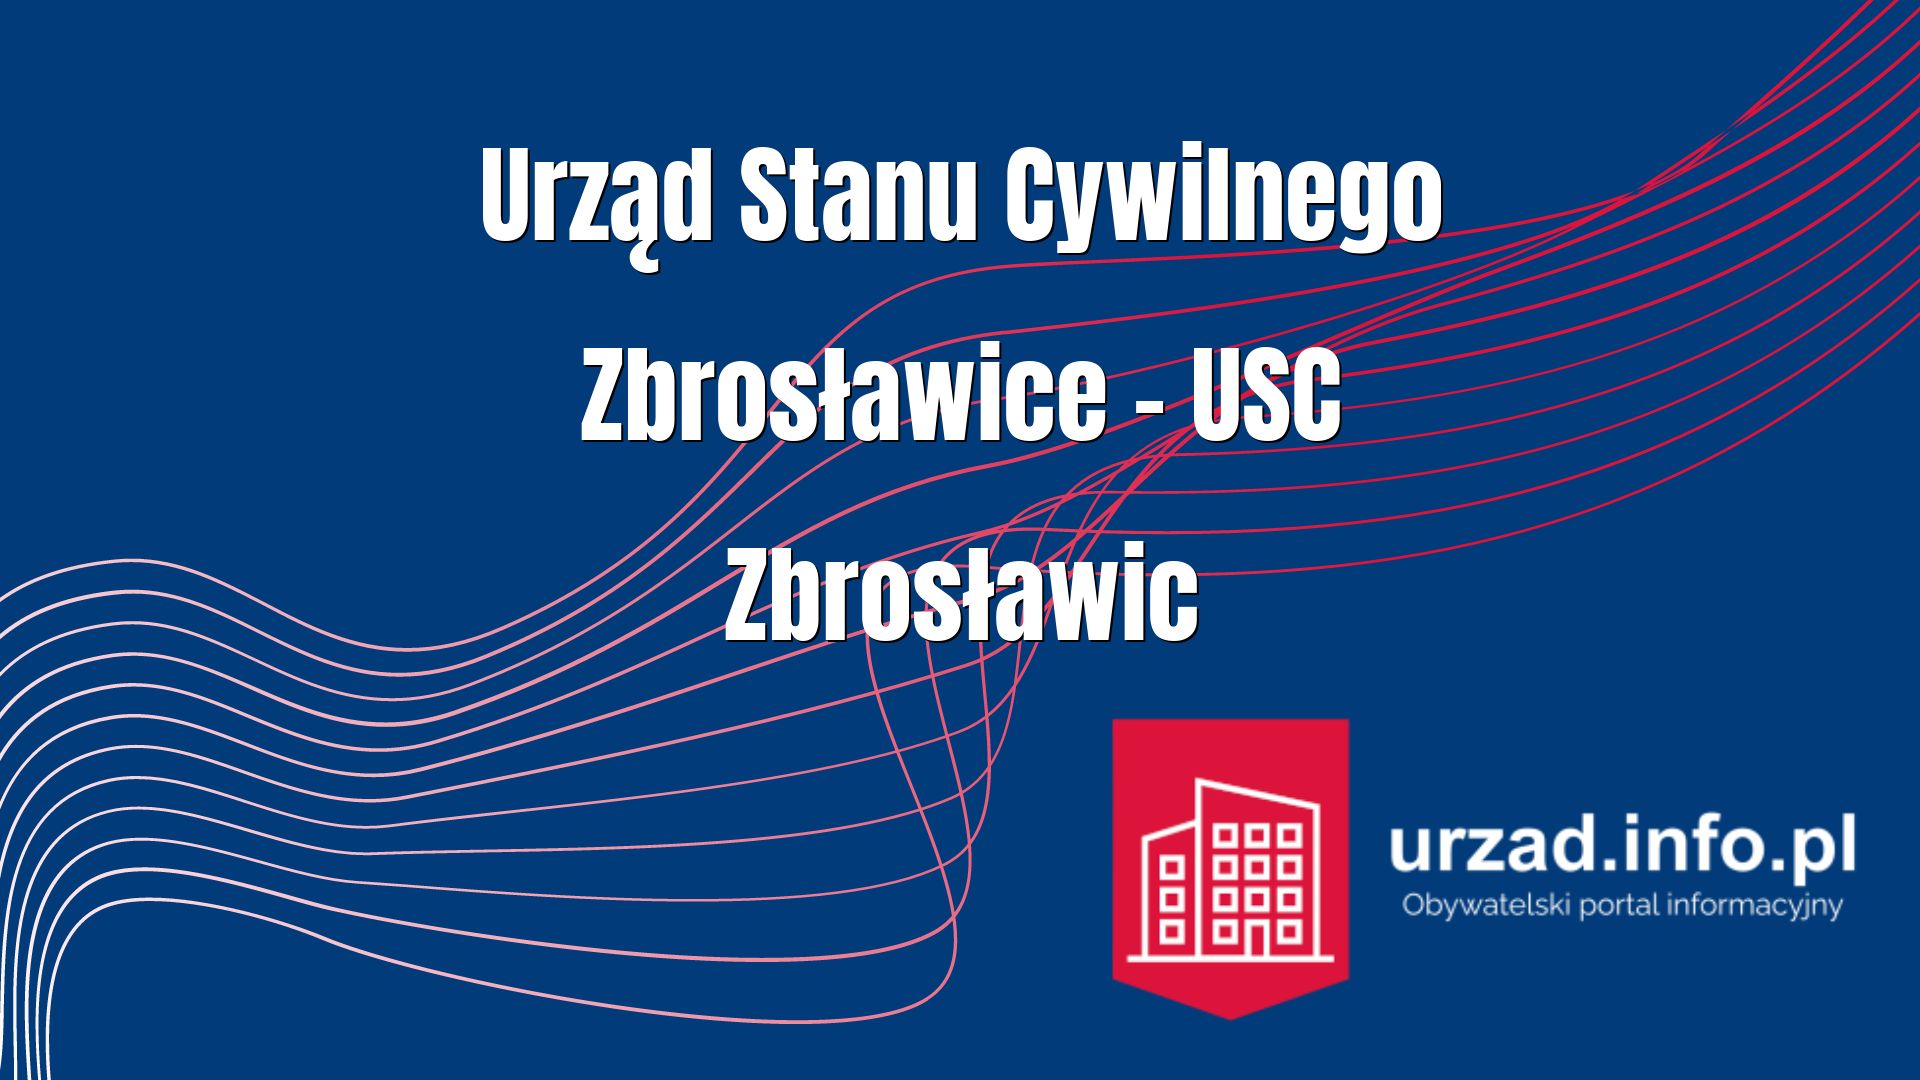 Urząd Stanu Cywilnego Zbrosławice – USC Zbrosławic